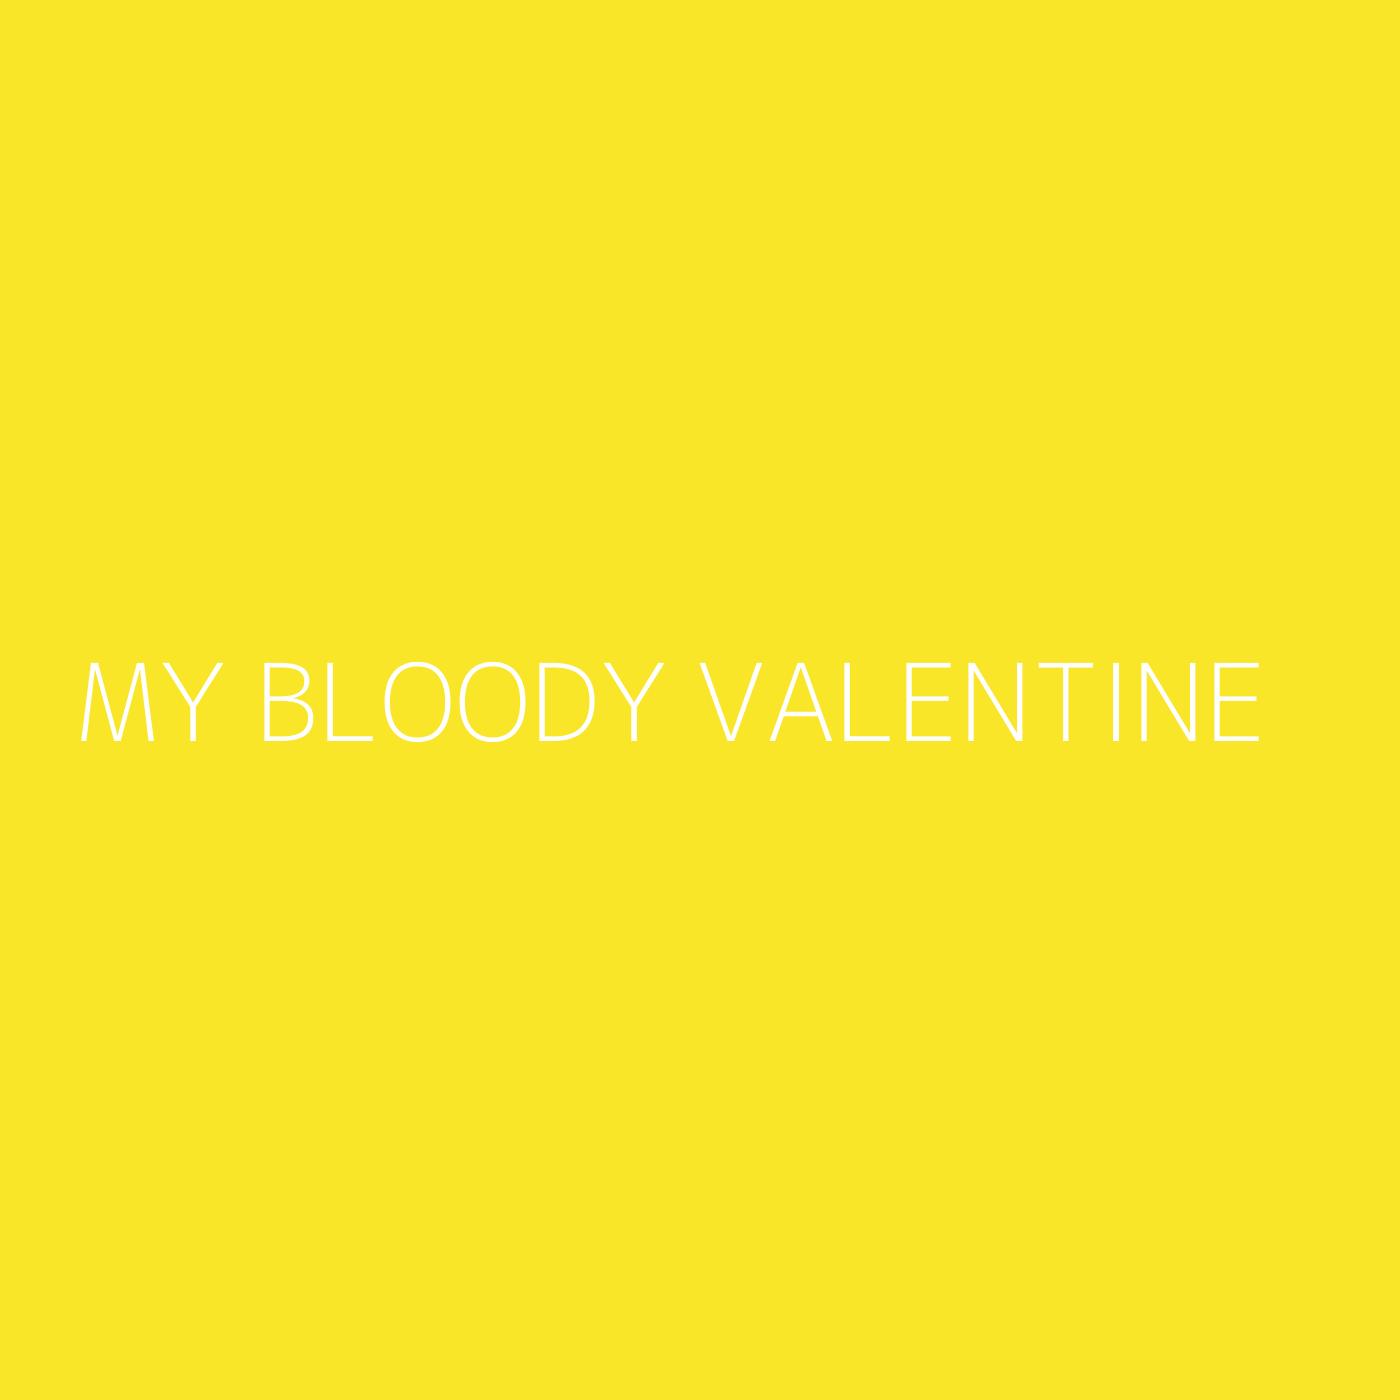 My Bloody Valentine Playlist Artwork